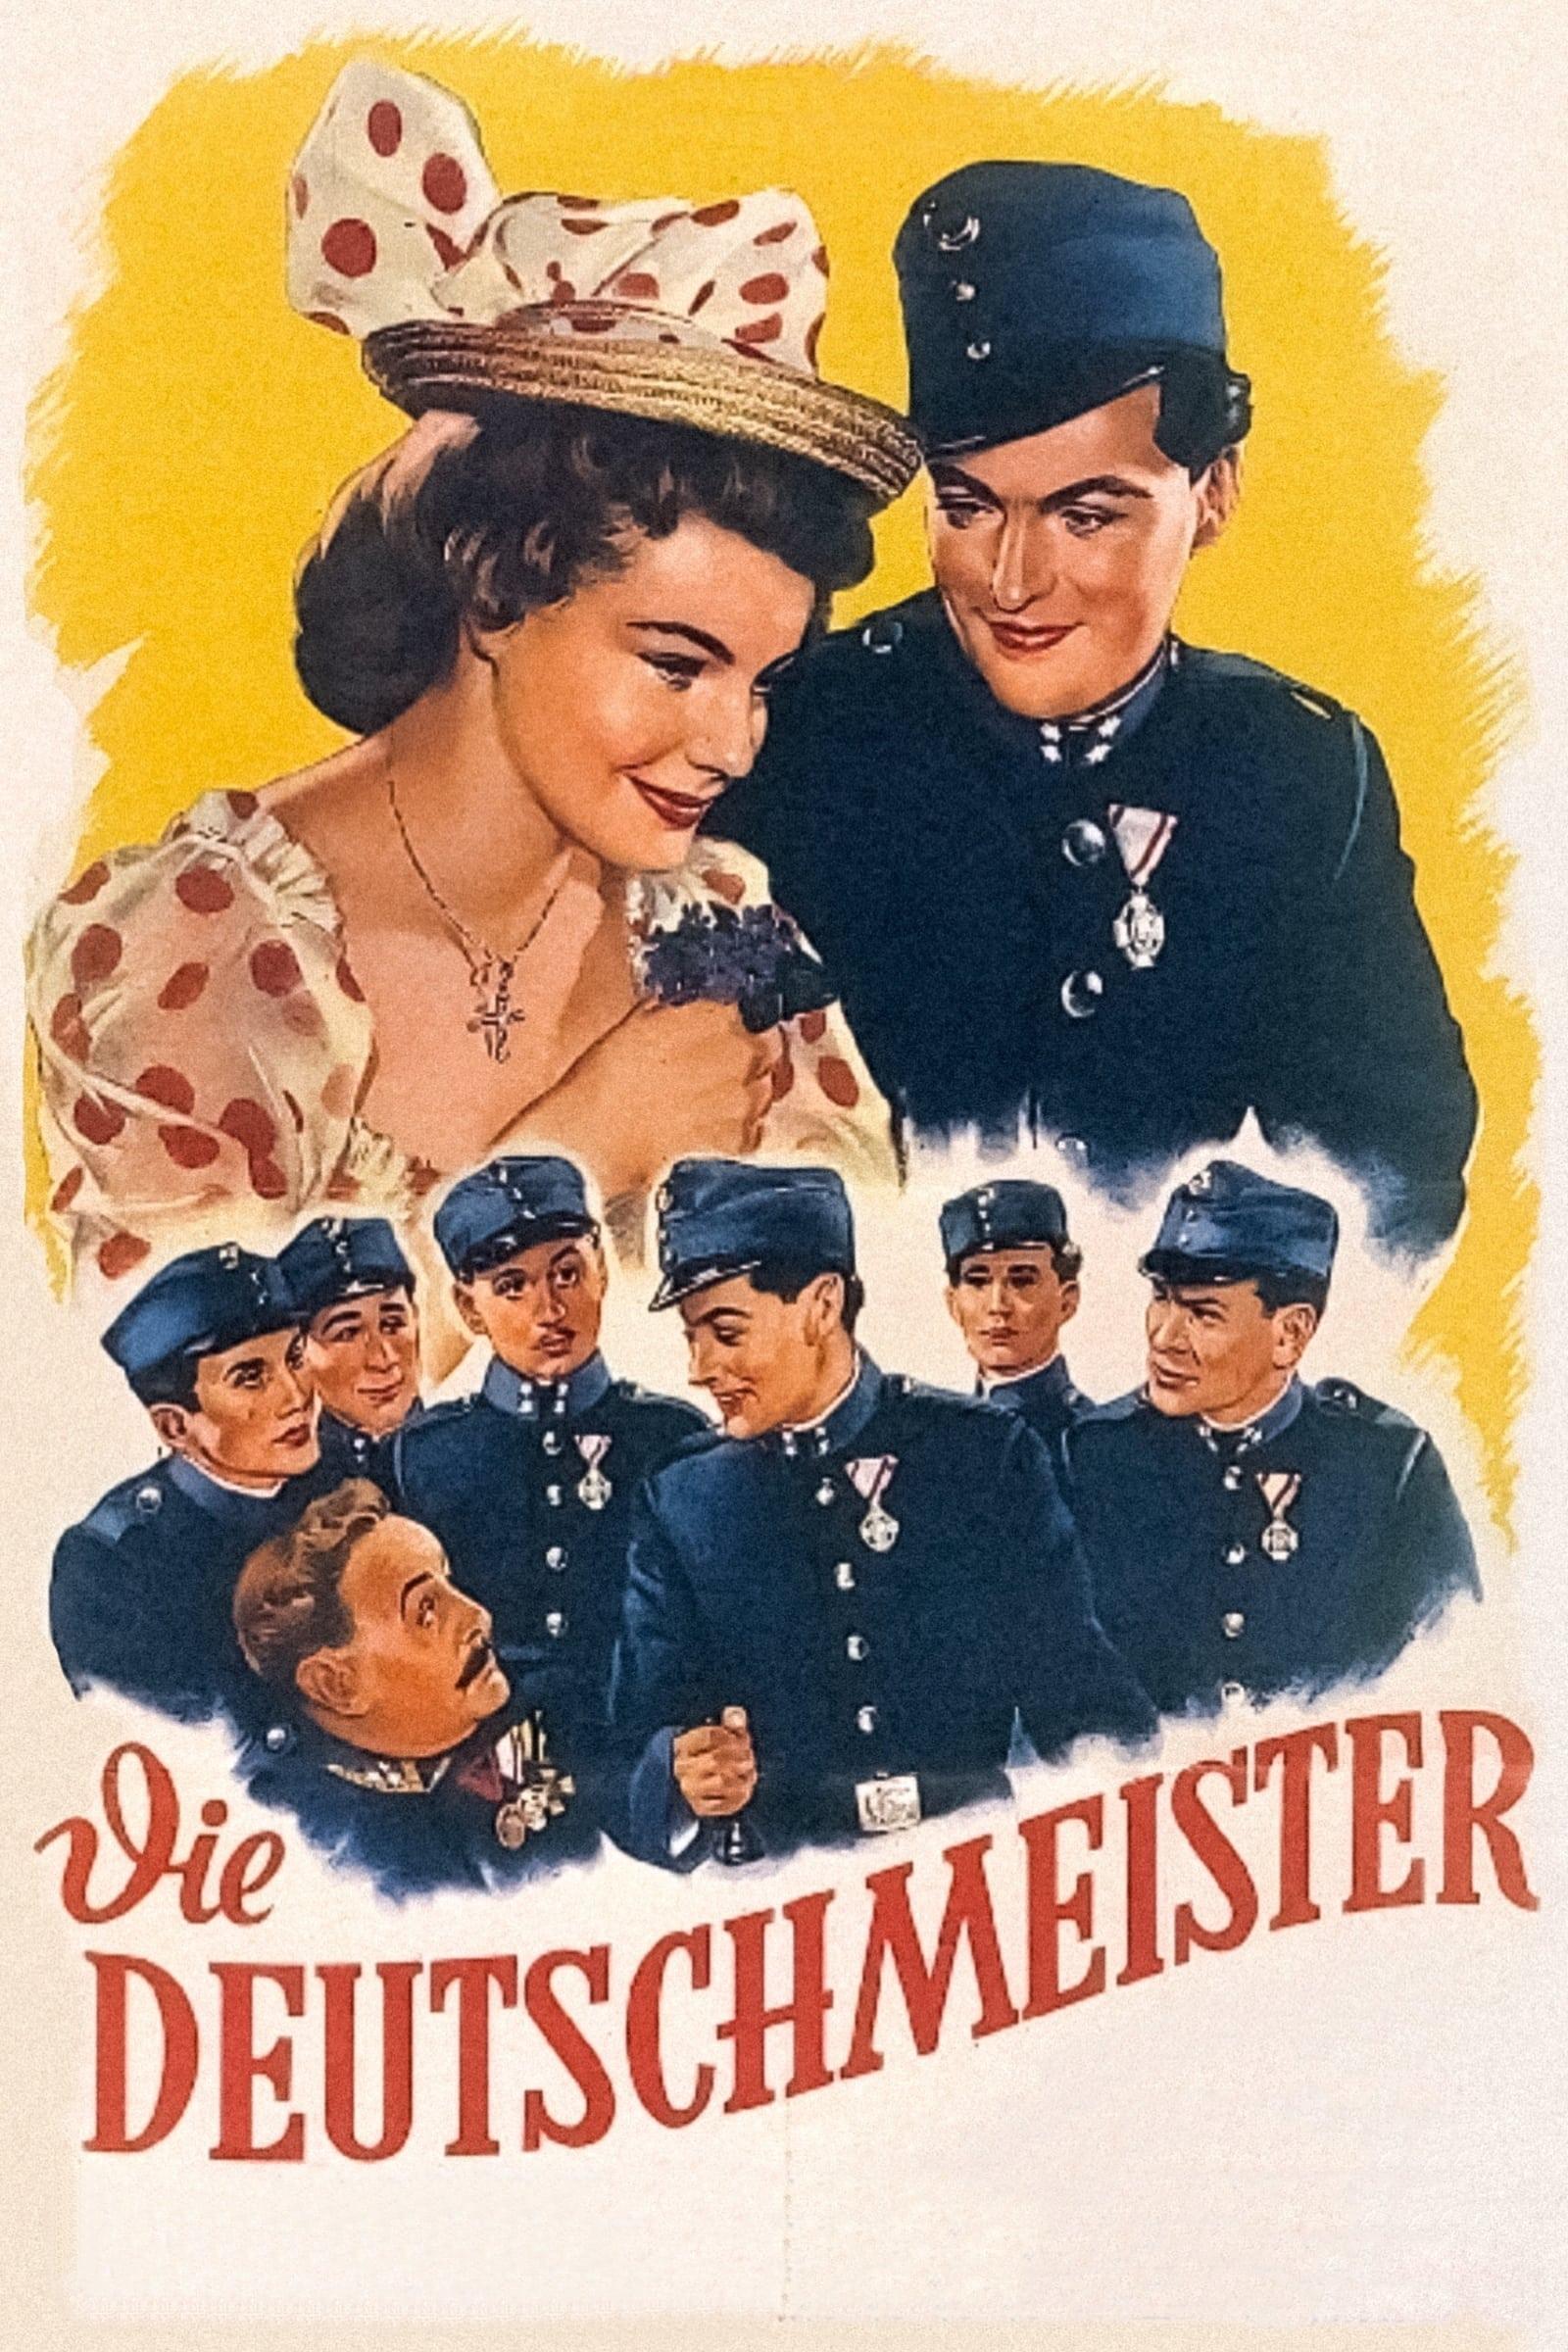 Die Deutschmeister poster